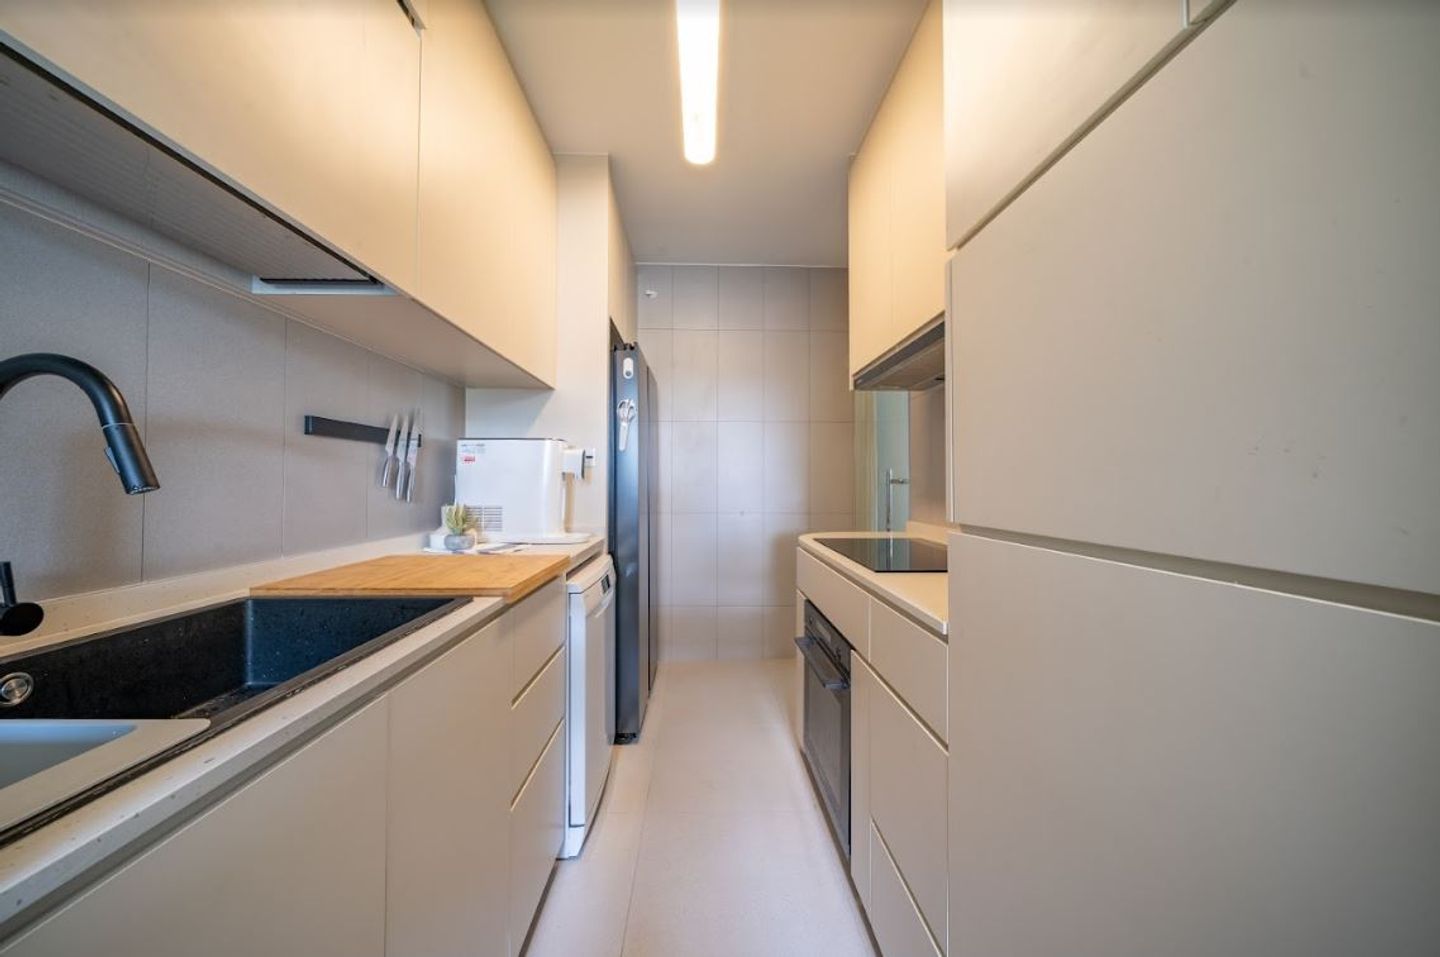 Minimal Compact Kitchen Cabinet Design In Beige